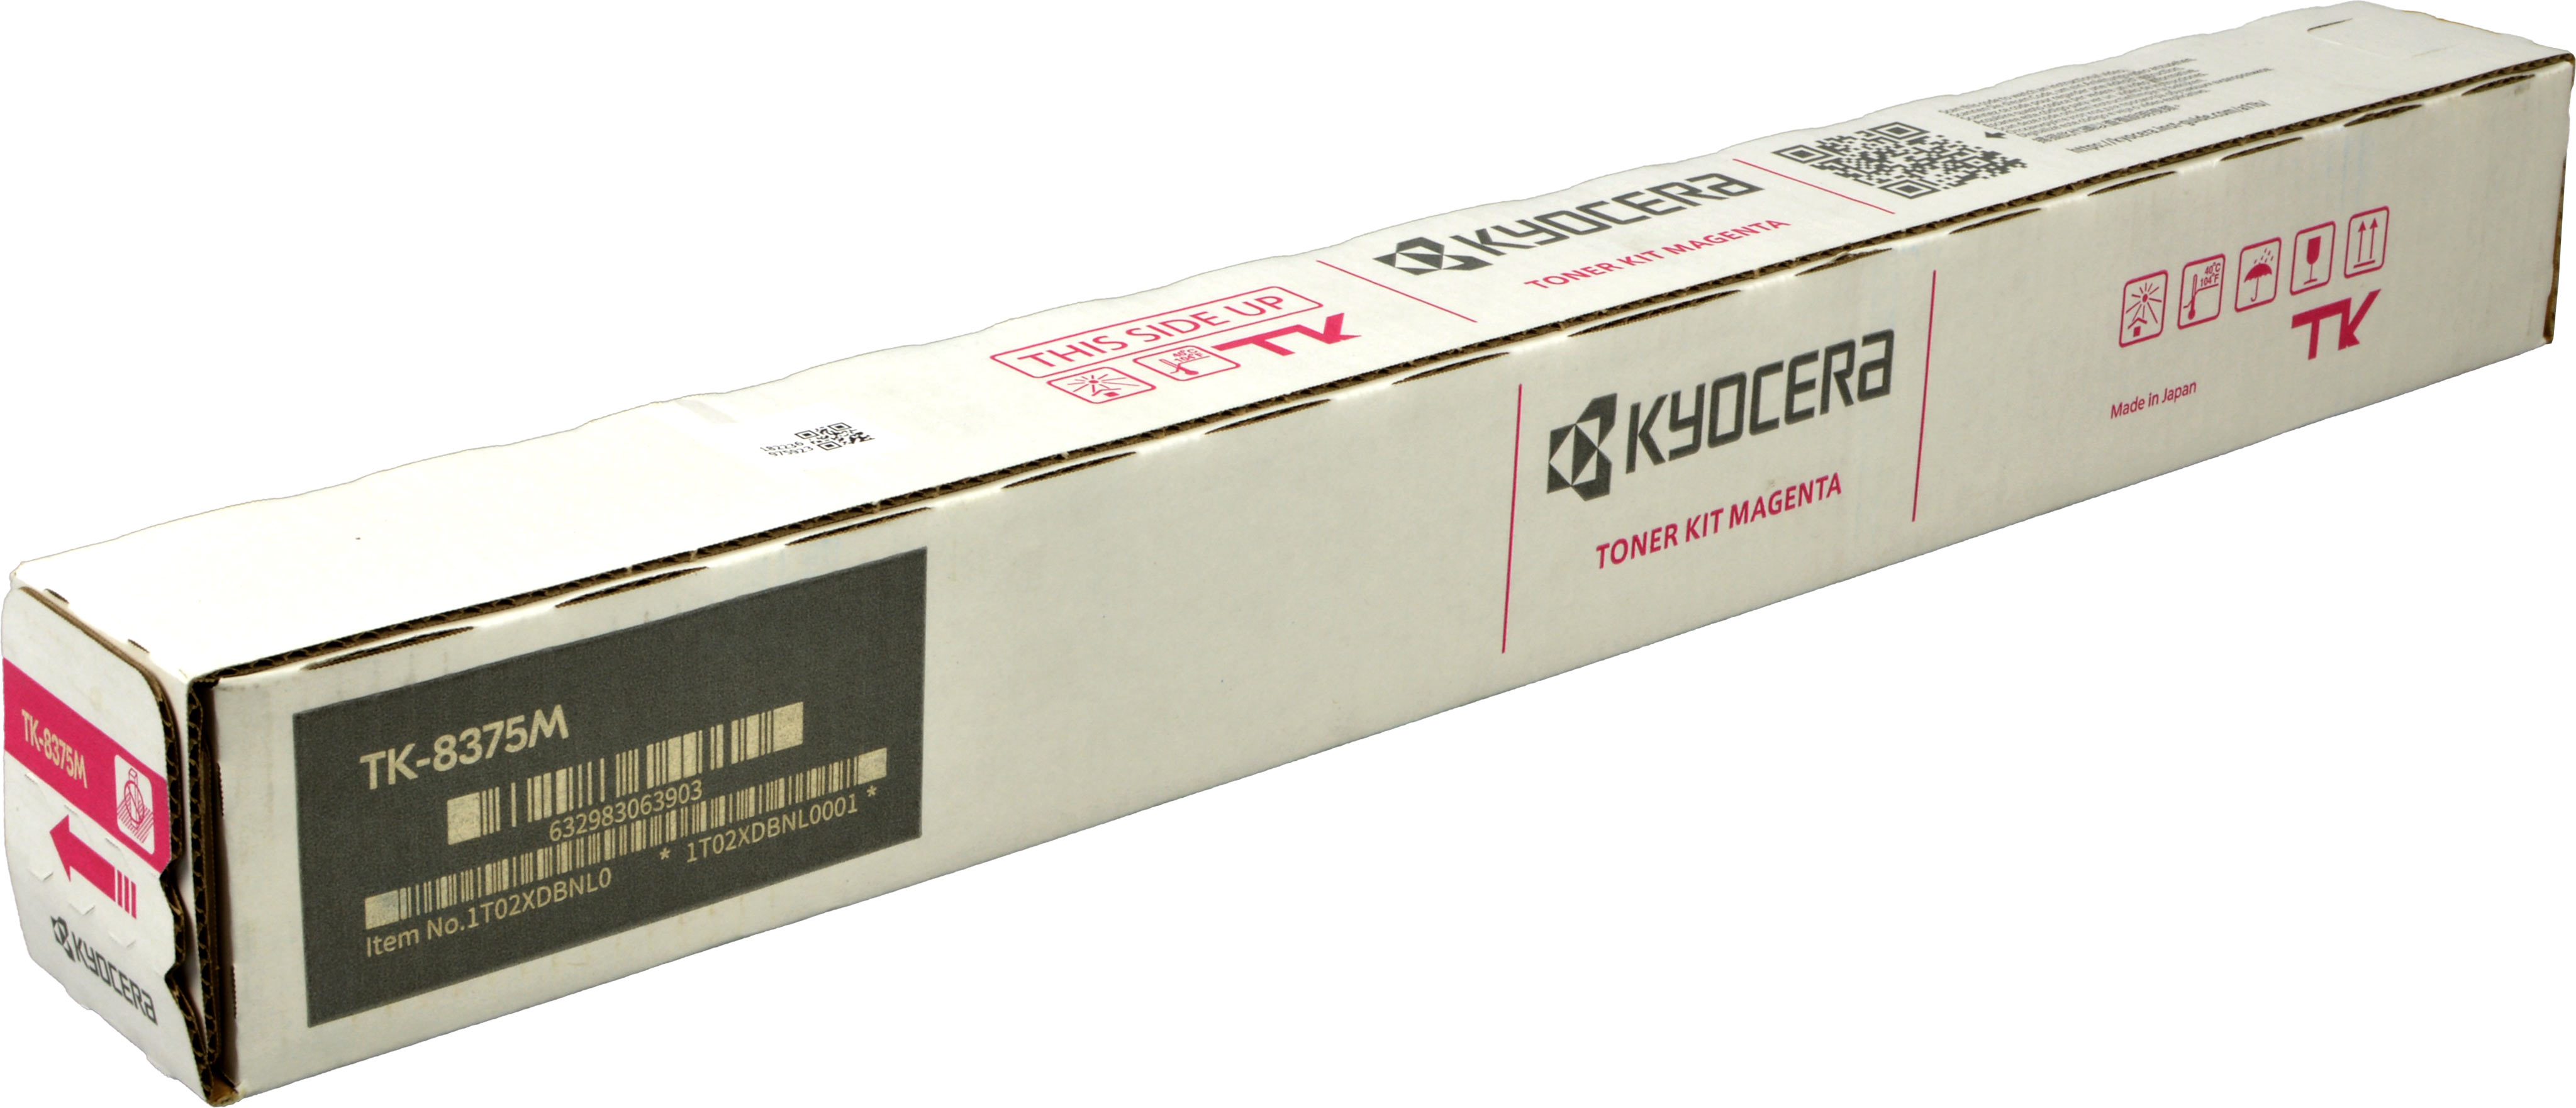 Kyocera Toner TK-8375M  1T02XDBNL0  magenta